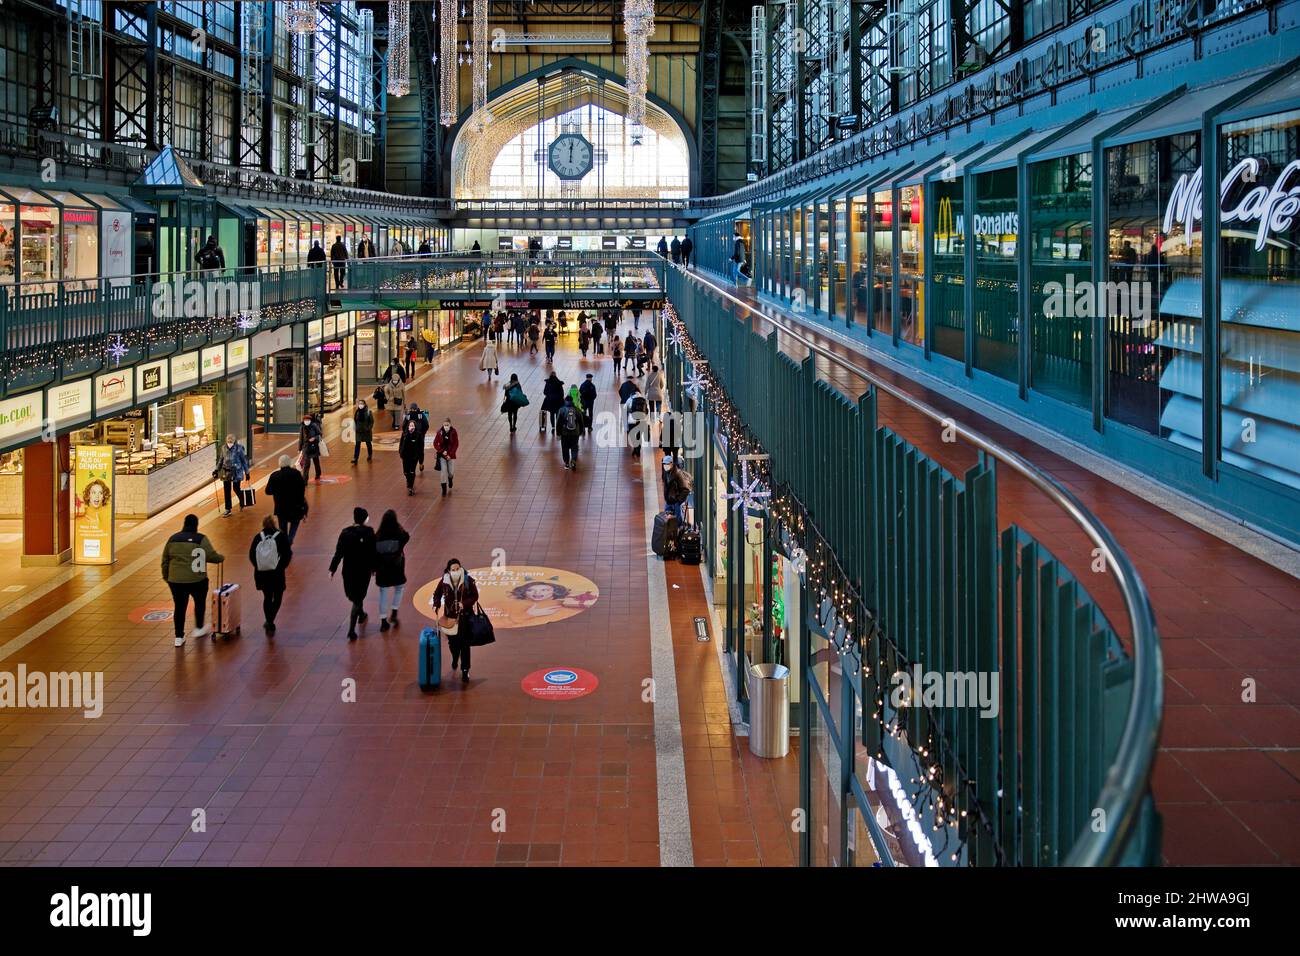 Lobby of the main station, Germany, Hamburg Stock Photo